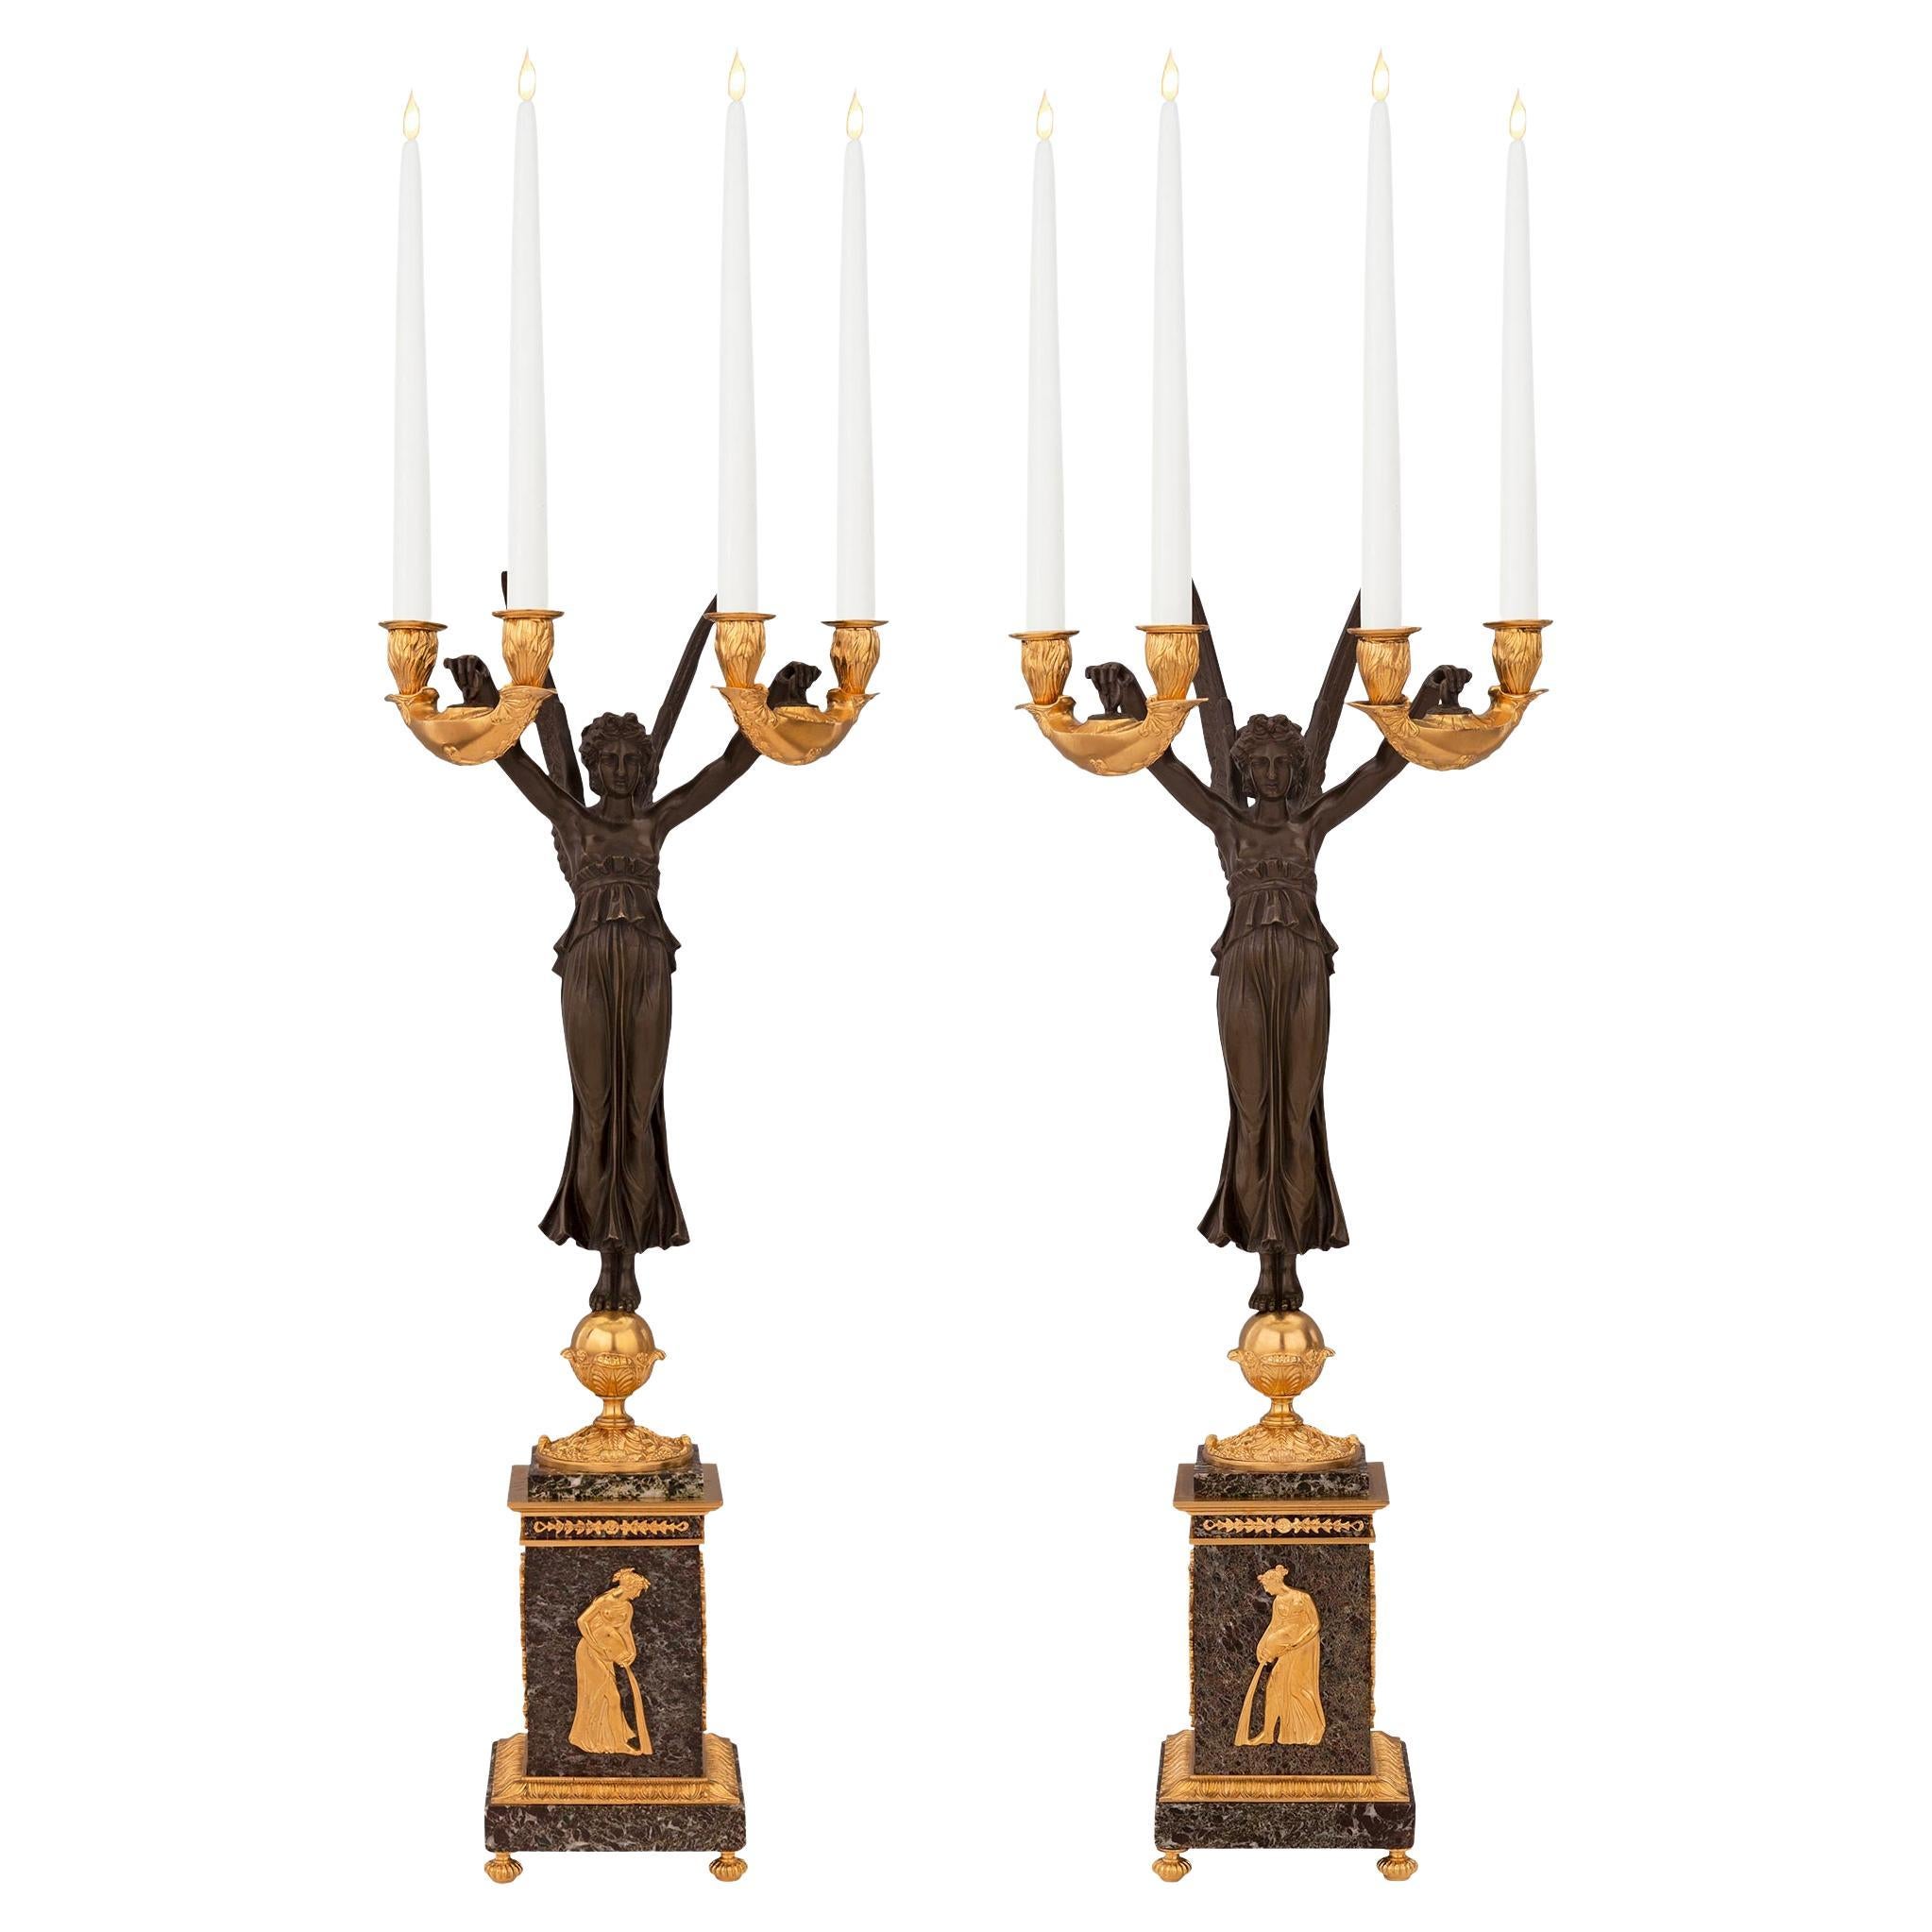 Paire de candélabres de style néo-classique français du XIXe siècle